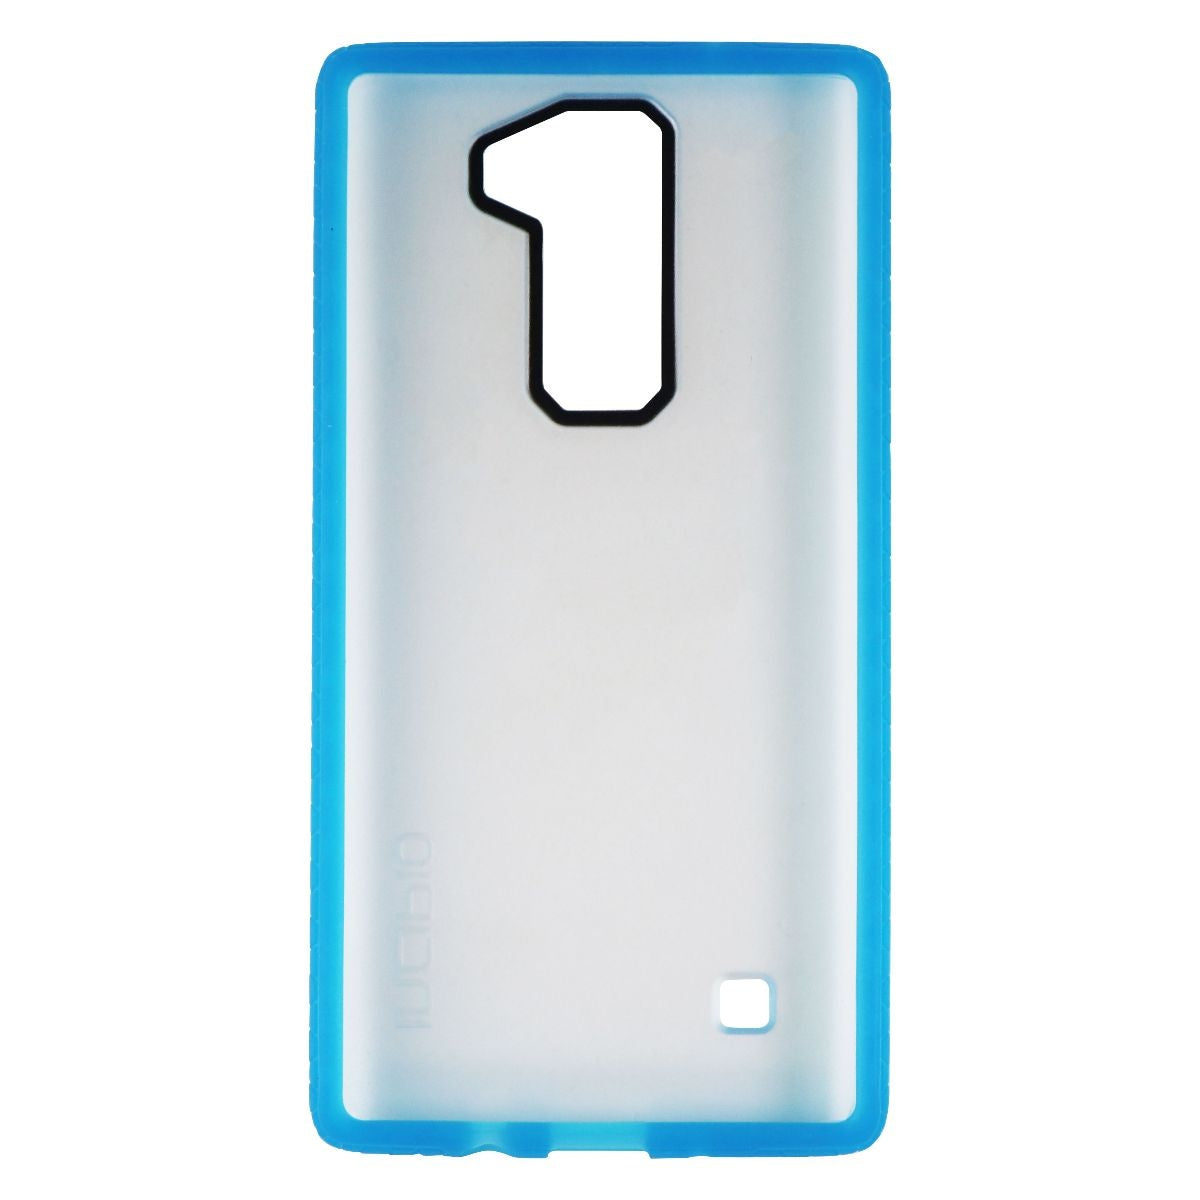 Incipio Octane Series Hardshell Hybrid Case Cover for LG K8v - Frost / Blue